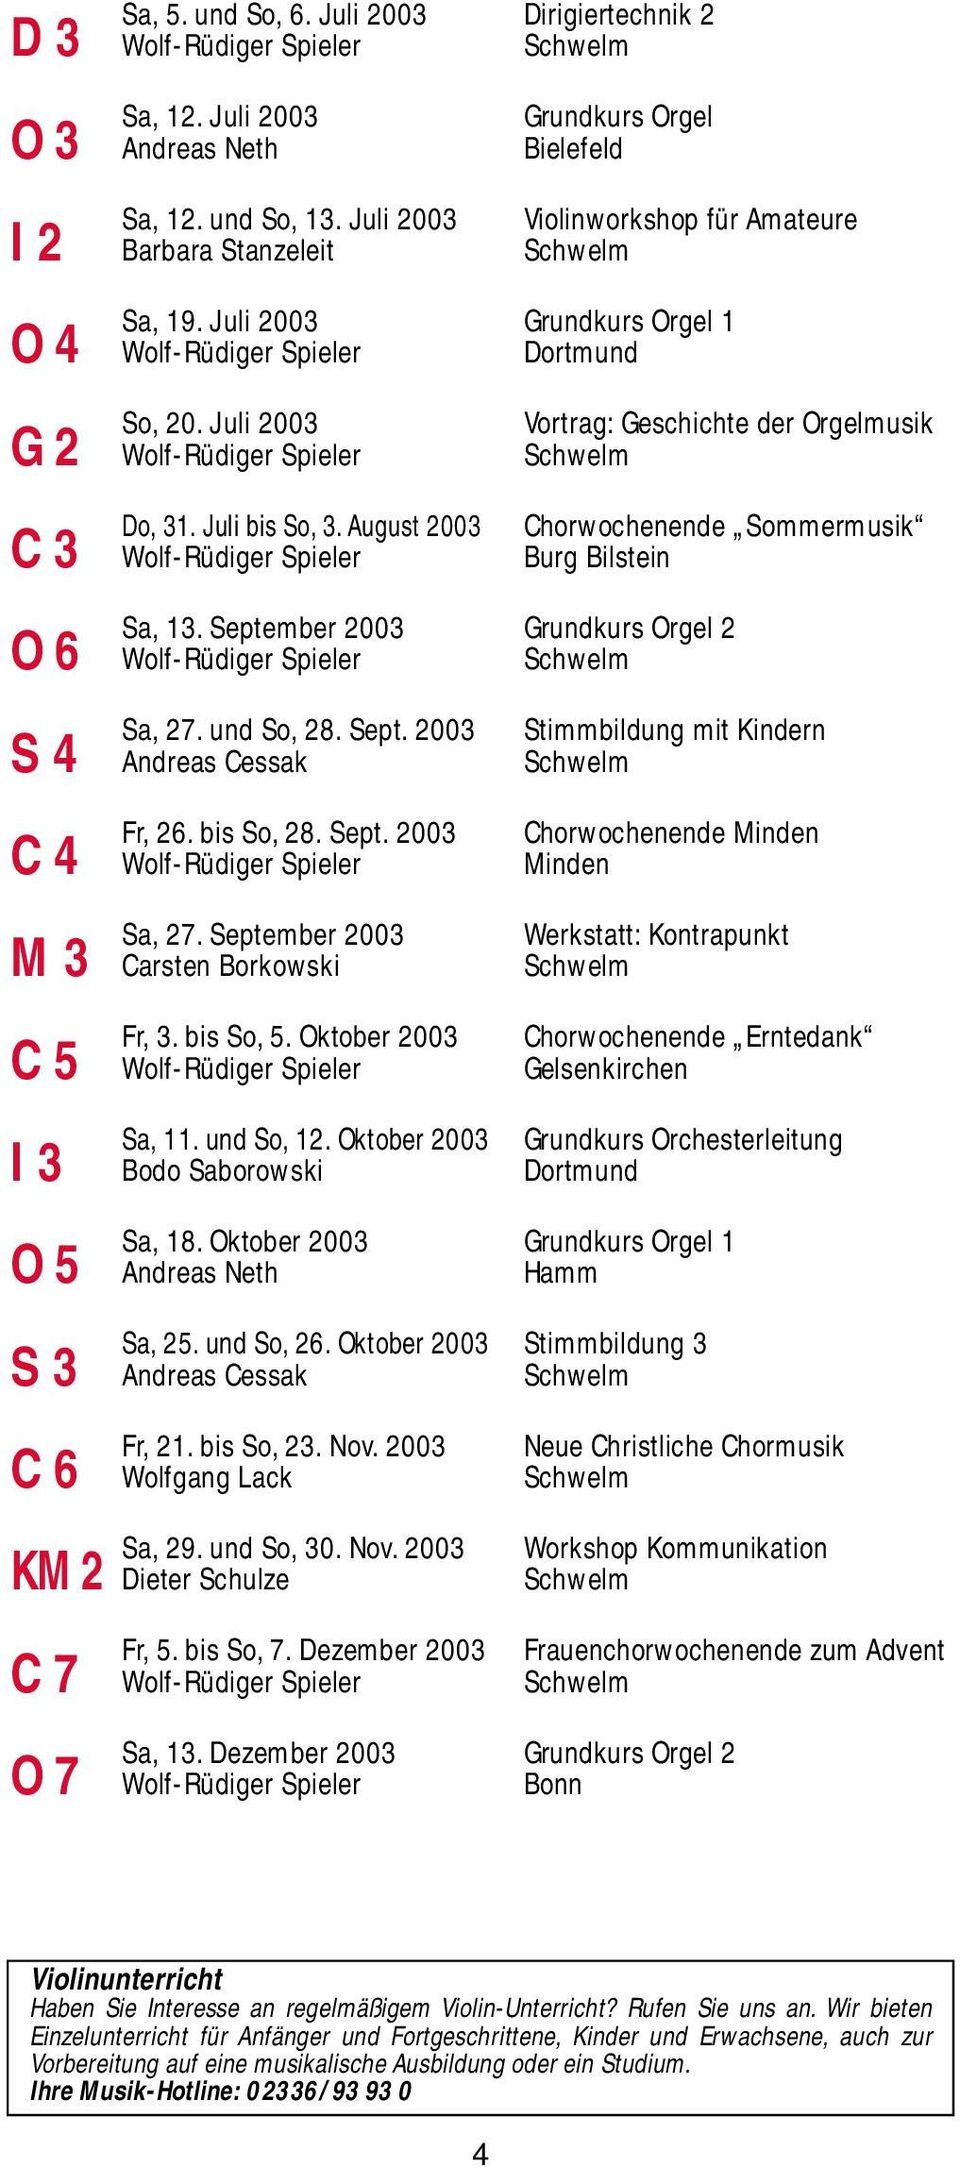 August 2003 C 3 Wolf-Rüdiger Spieler Burg Bilstein Vortrag: Geschichte der Orgelmusik Chorwochenende Sommermusik Sa, 13. September 2003 Grundkurs Orgel 2 O 6 Wolf-Rüdiger Spieler Sa, 27. und So, 28.